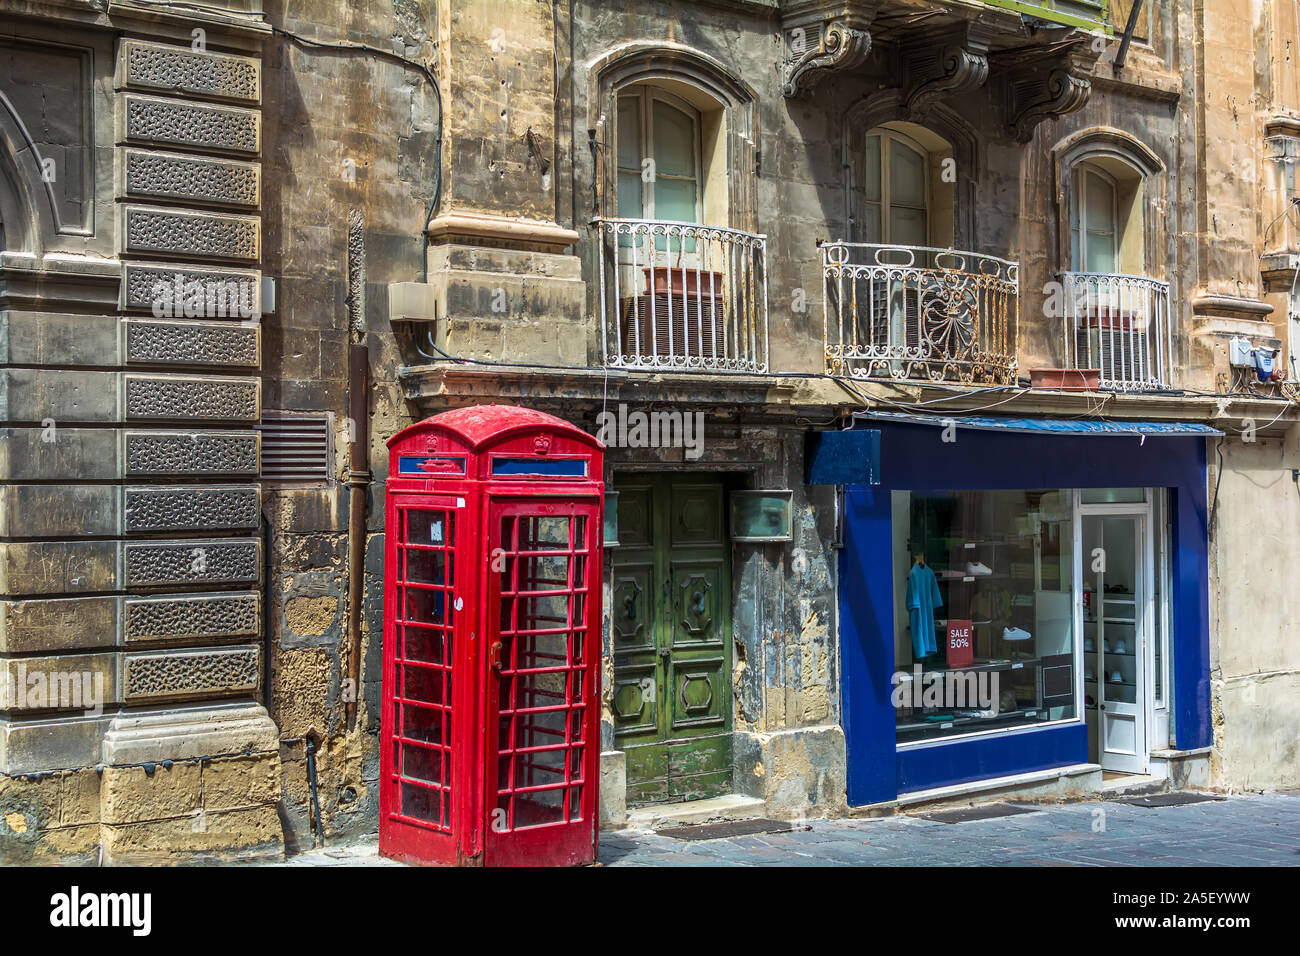 Londoner Stil iconic rote Telefonzelle Neben heruntergekommenen alten Gebäude und helle Schaufenster der Clothing Store in Valletta, Malta. Stockfoto